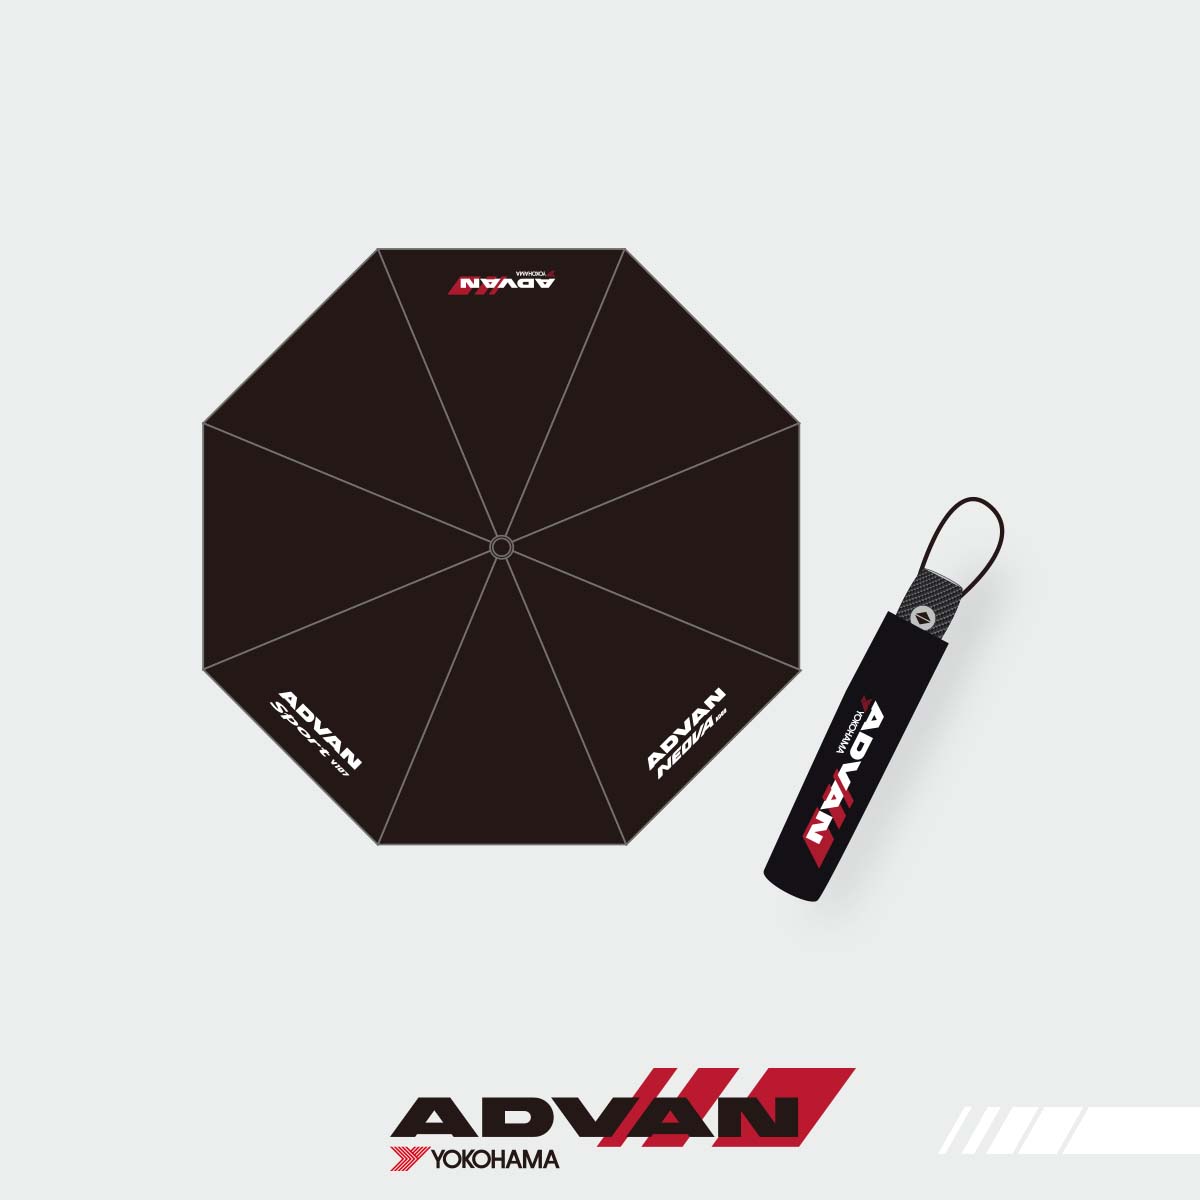 ADVAN AD09 x V107 Foldable Umbrella